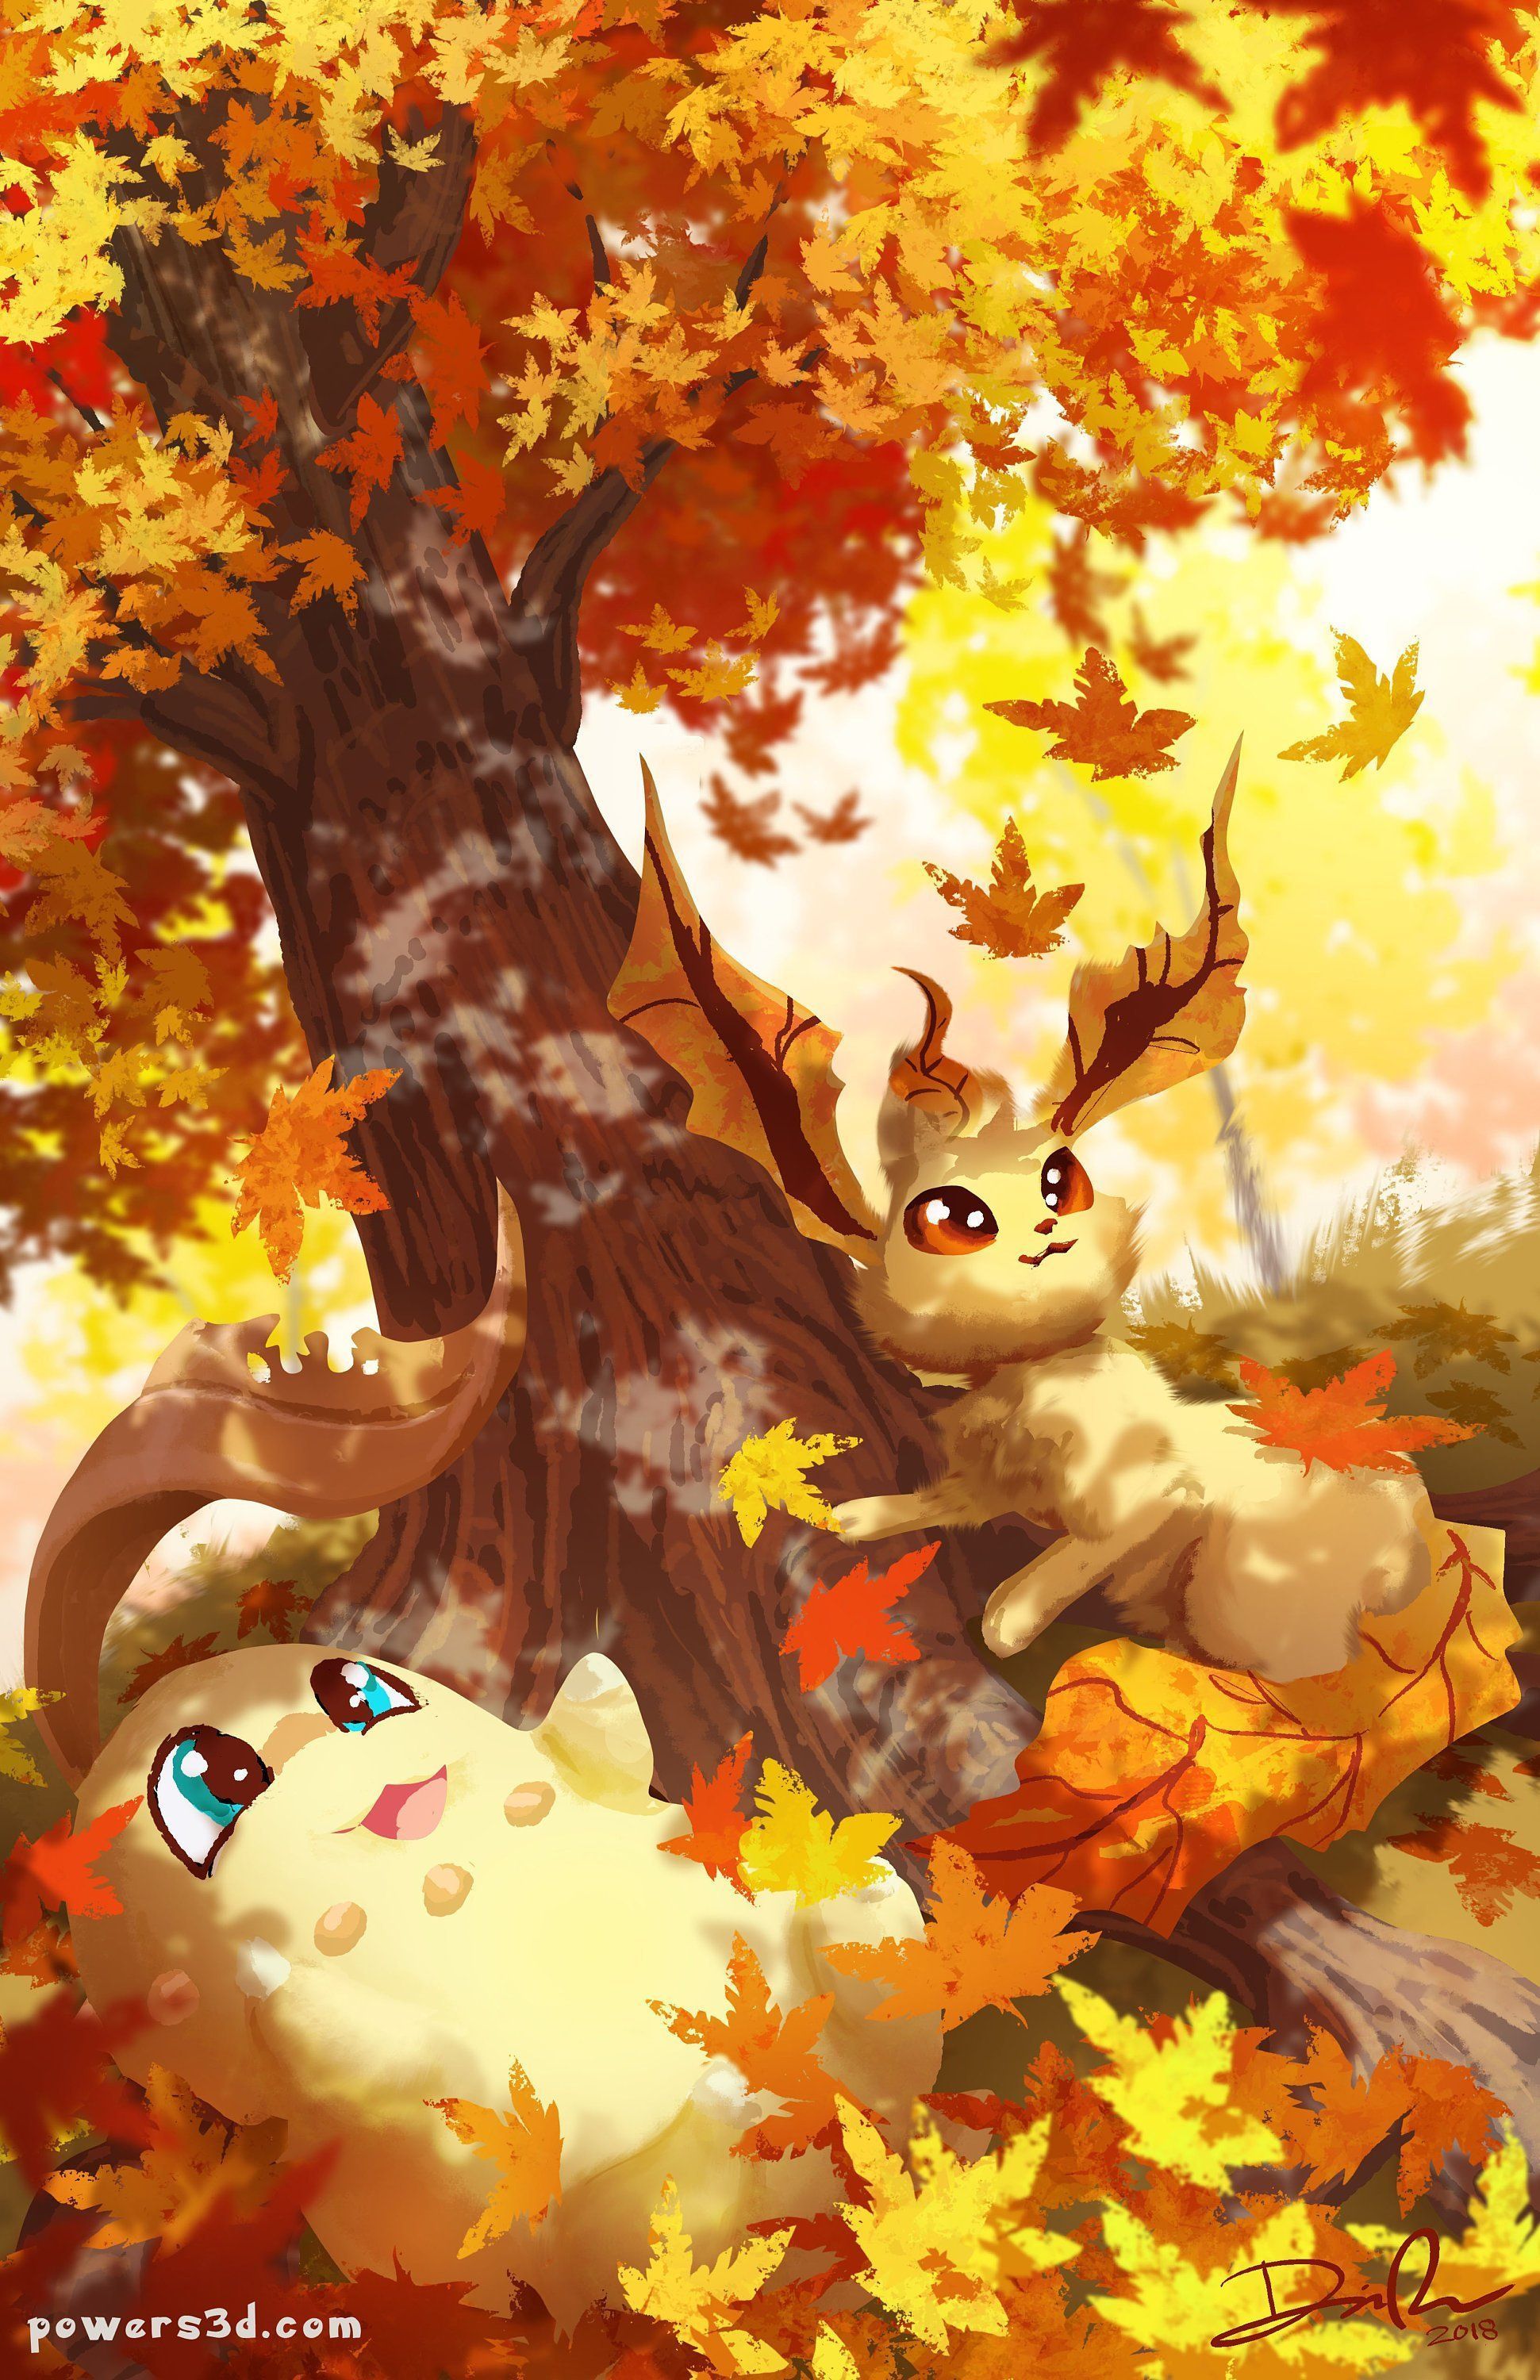 Pokemon Autumn Wallpaper Free Pokemon Autumn Background